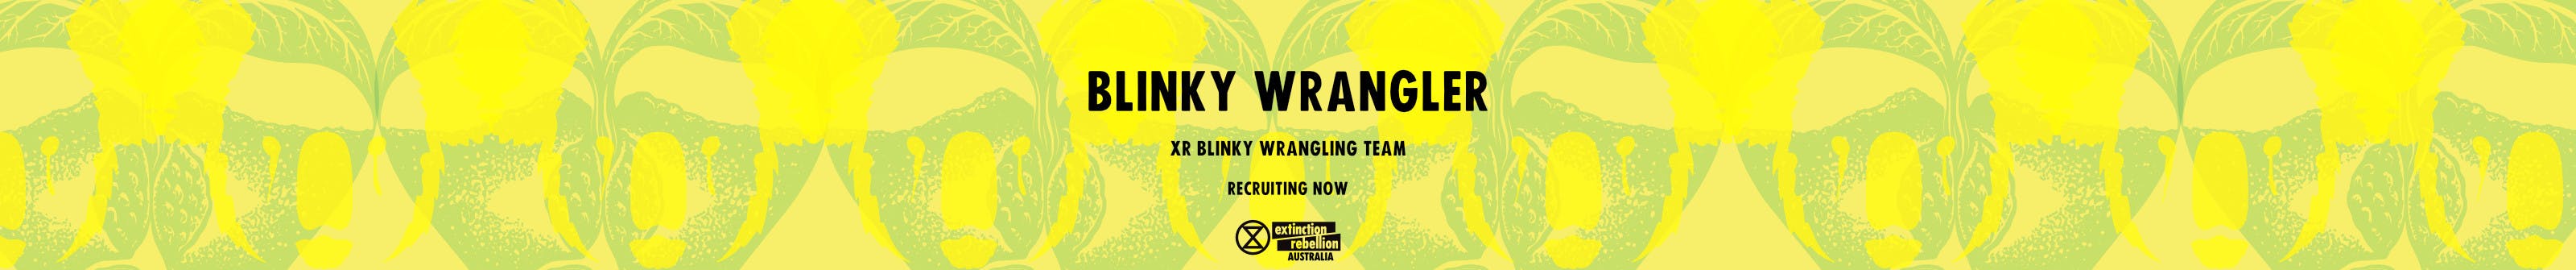 Blinky Wrangler